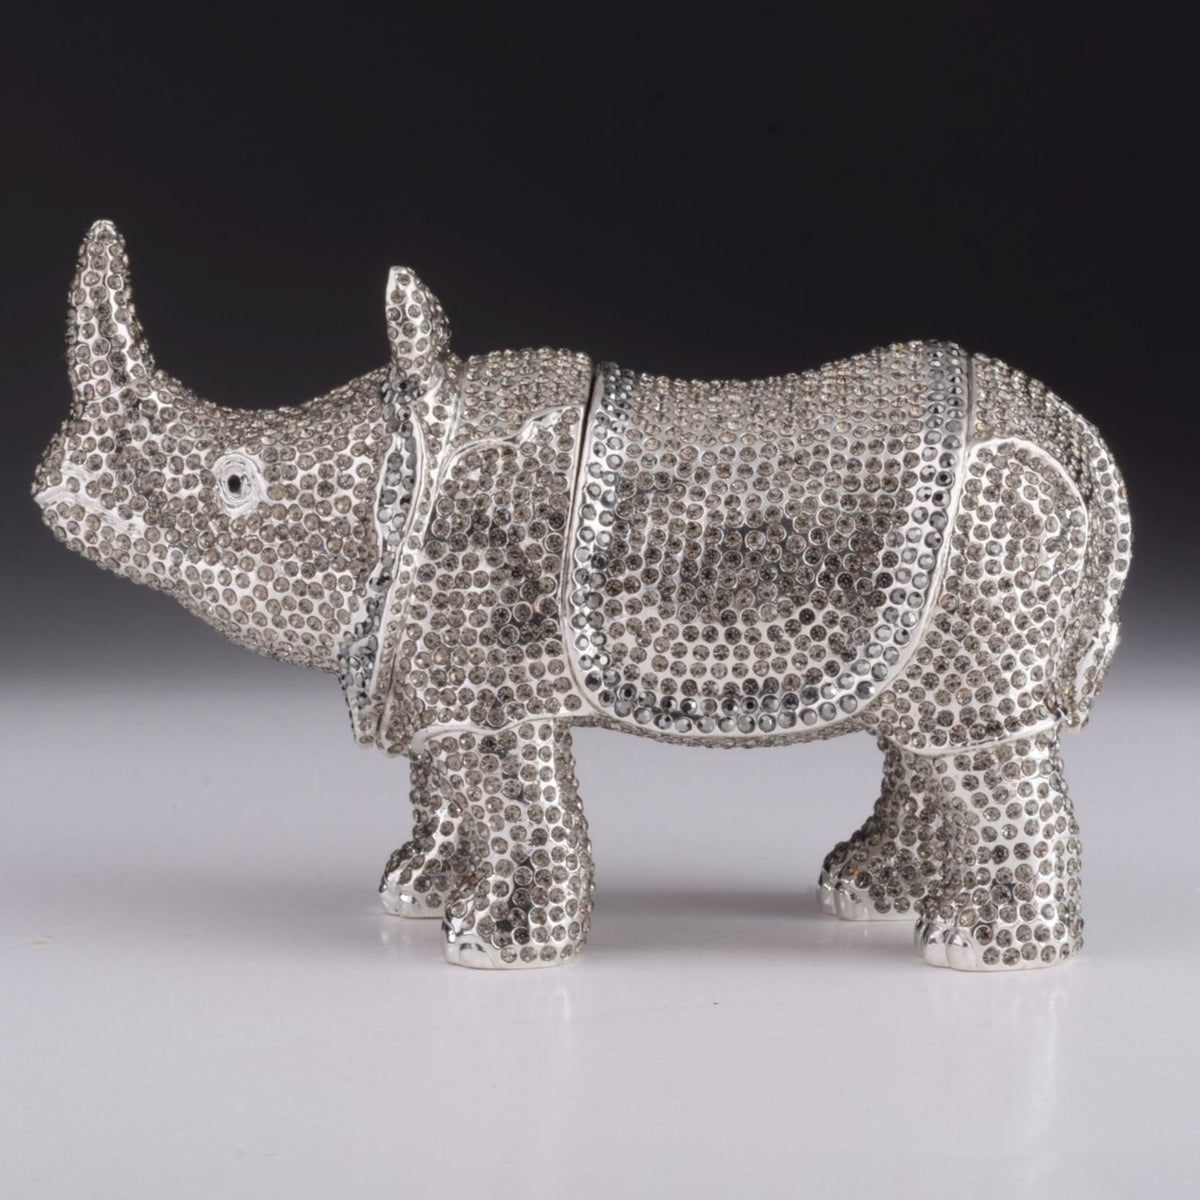 Rhino trinket box Keren Kopal